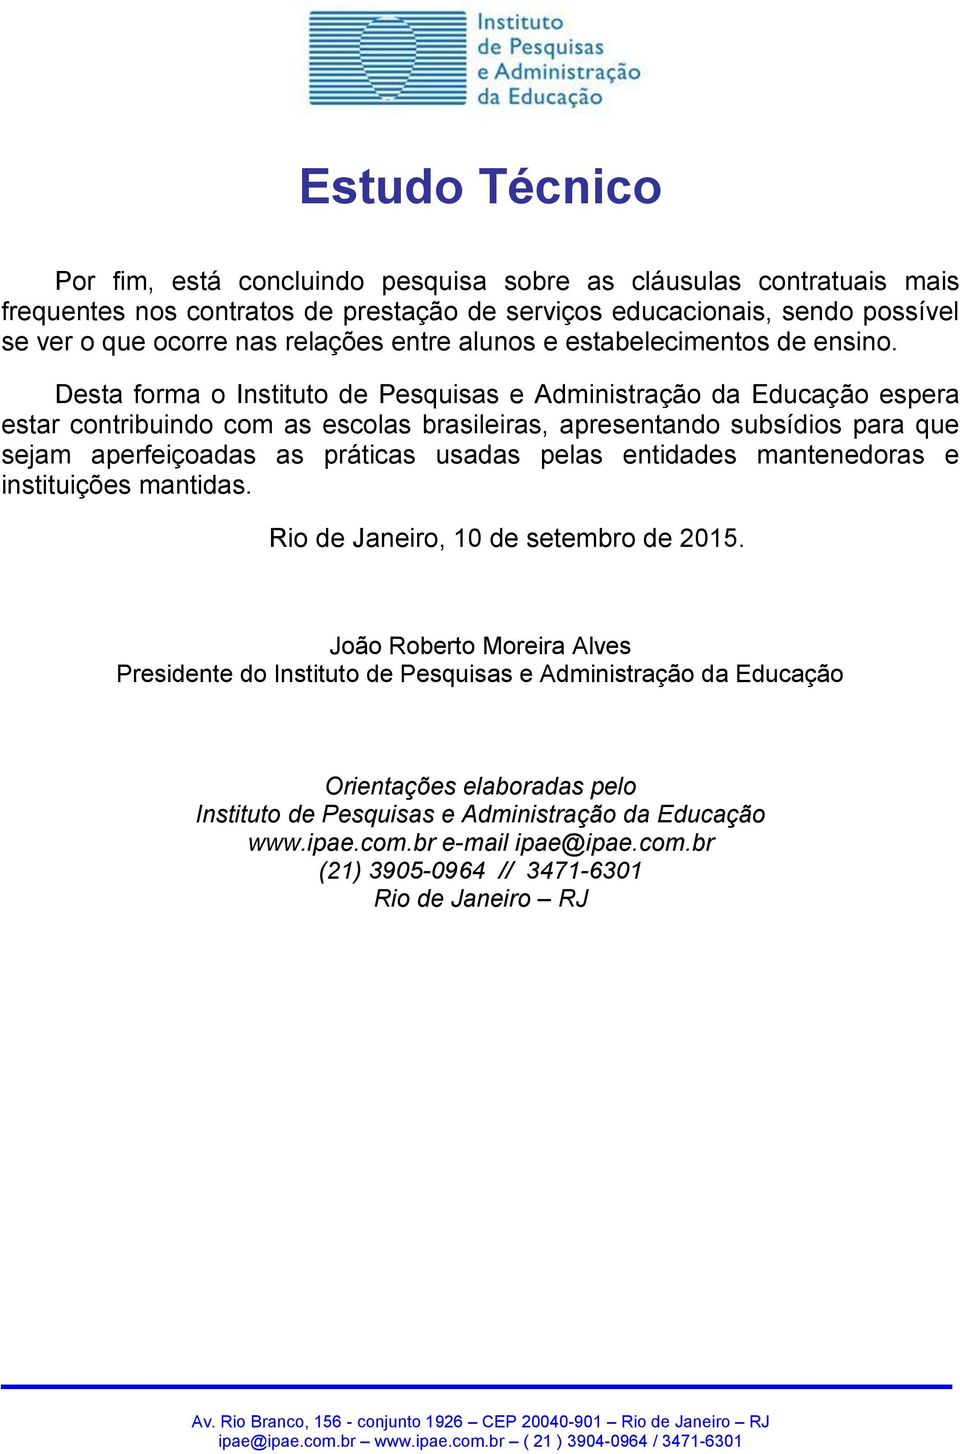 Desta forma o Instituto de Pesquisas e Administração da Educação espera estar contribuindo com as escolas brasileiras, apresentando subsídios para que sejam aperfeiçoadas as práticas usadas